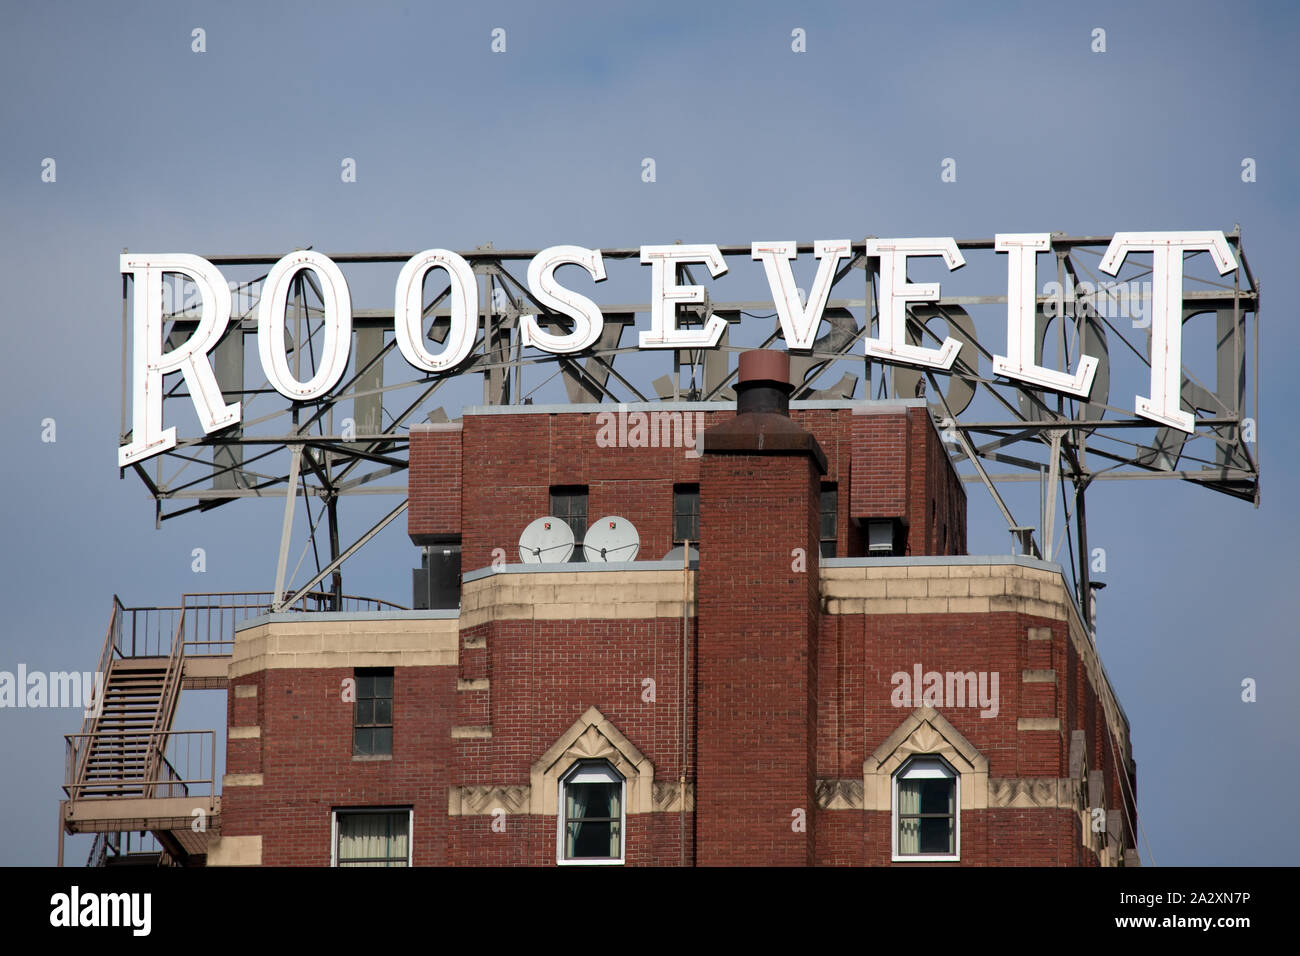 Roosevelt Hotel sign, Seattle, Washington Stock Photo